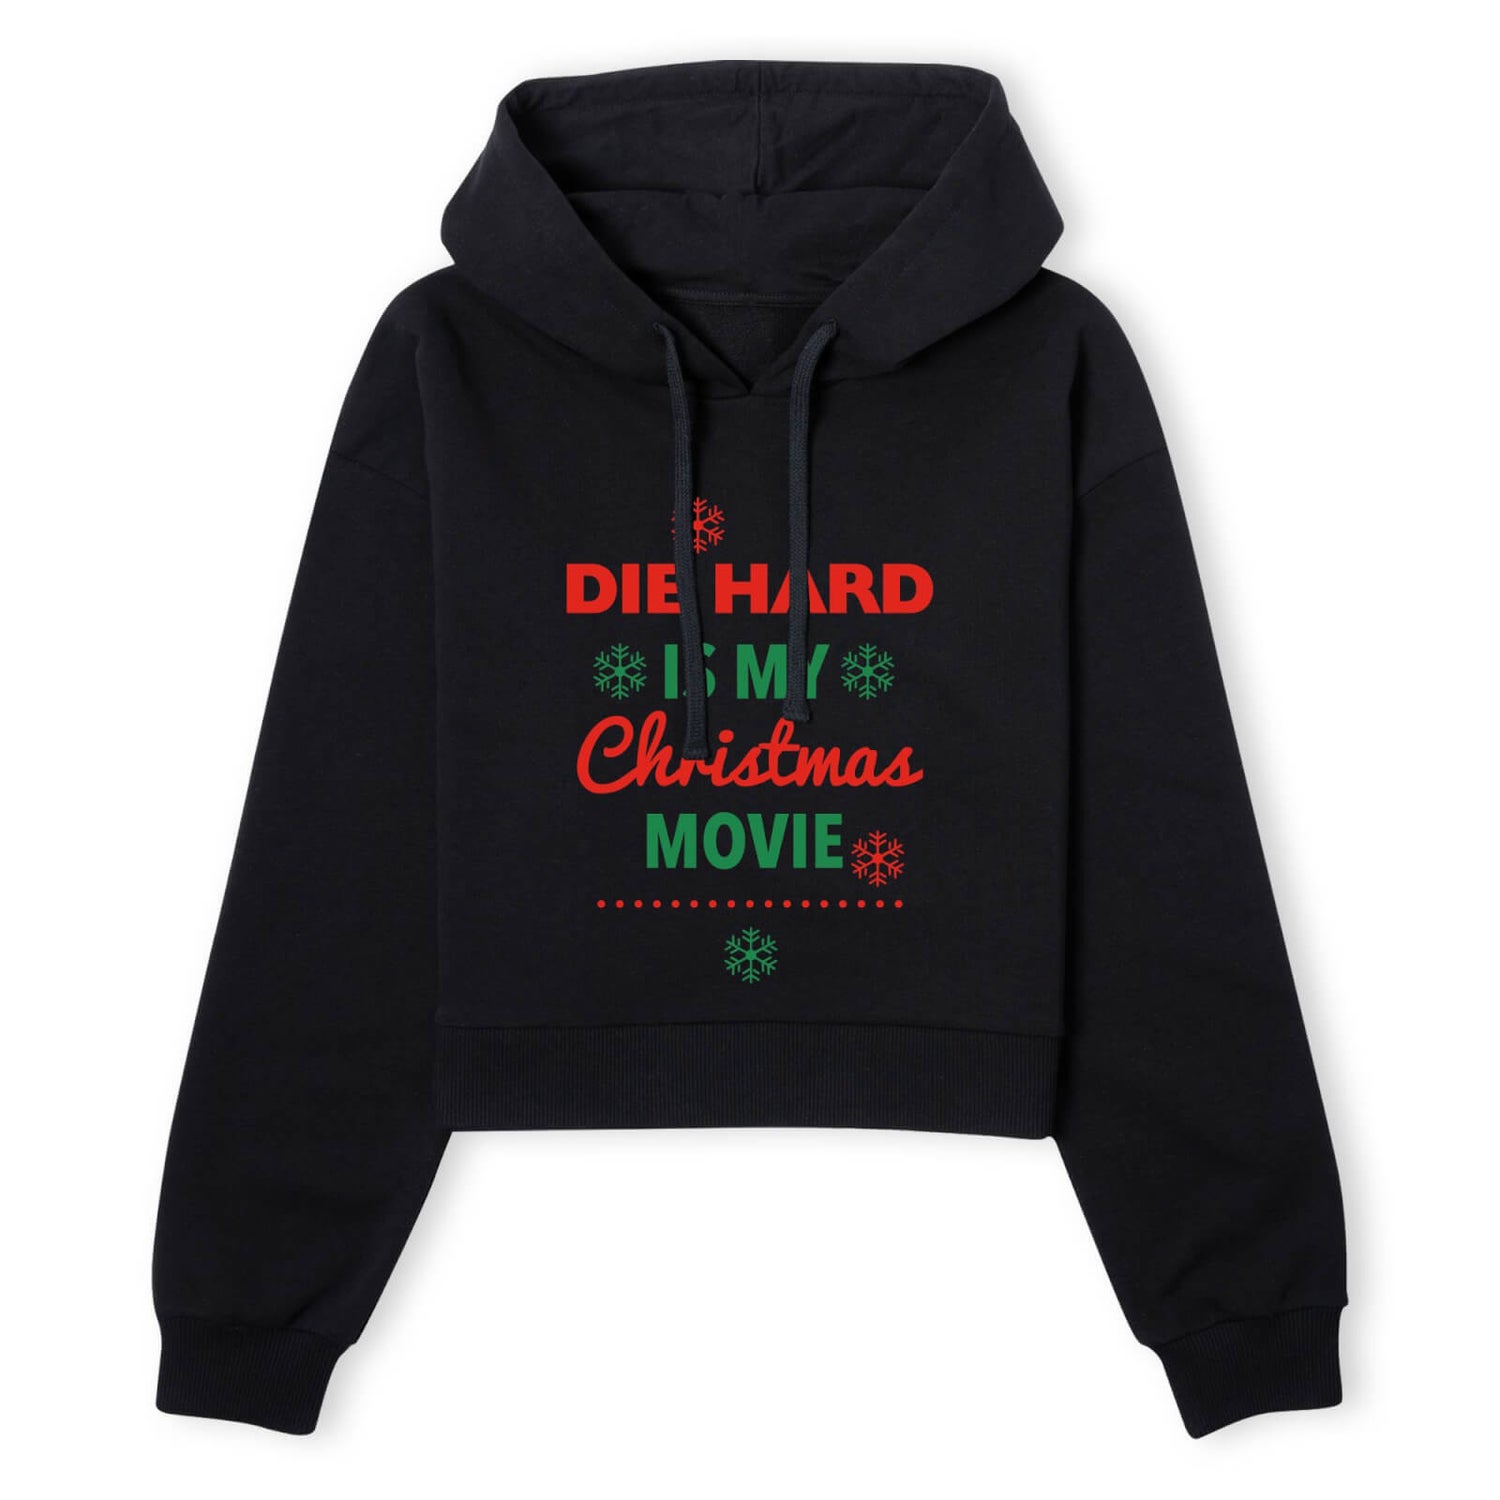 Die Hard Christmas Movie Women's Cropped Hoodie - Black